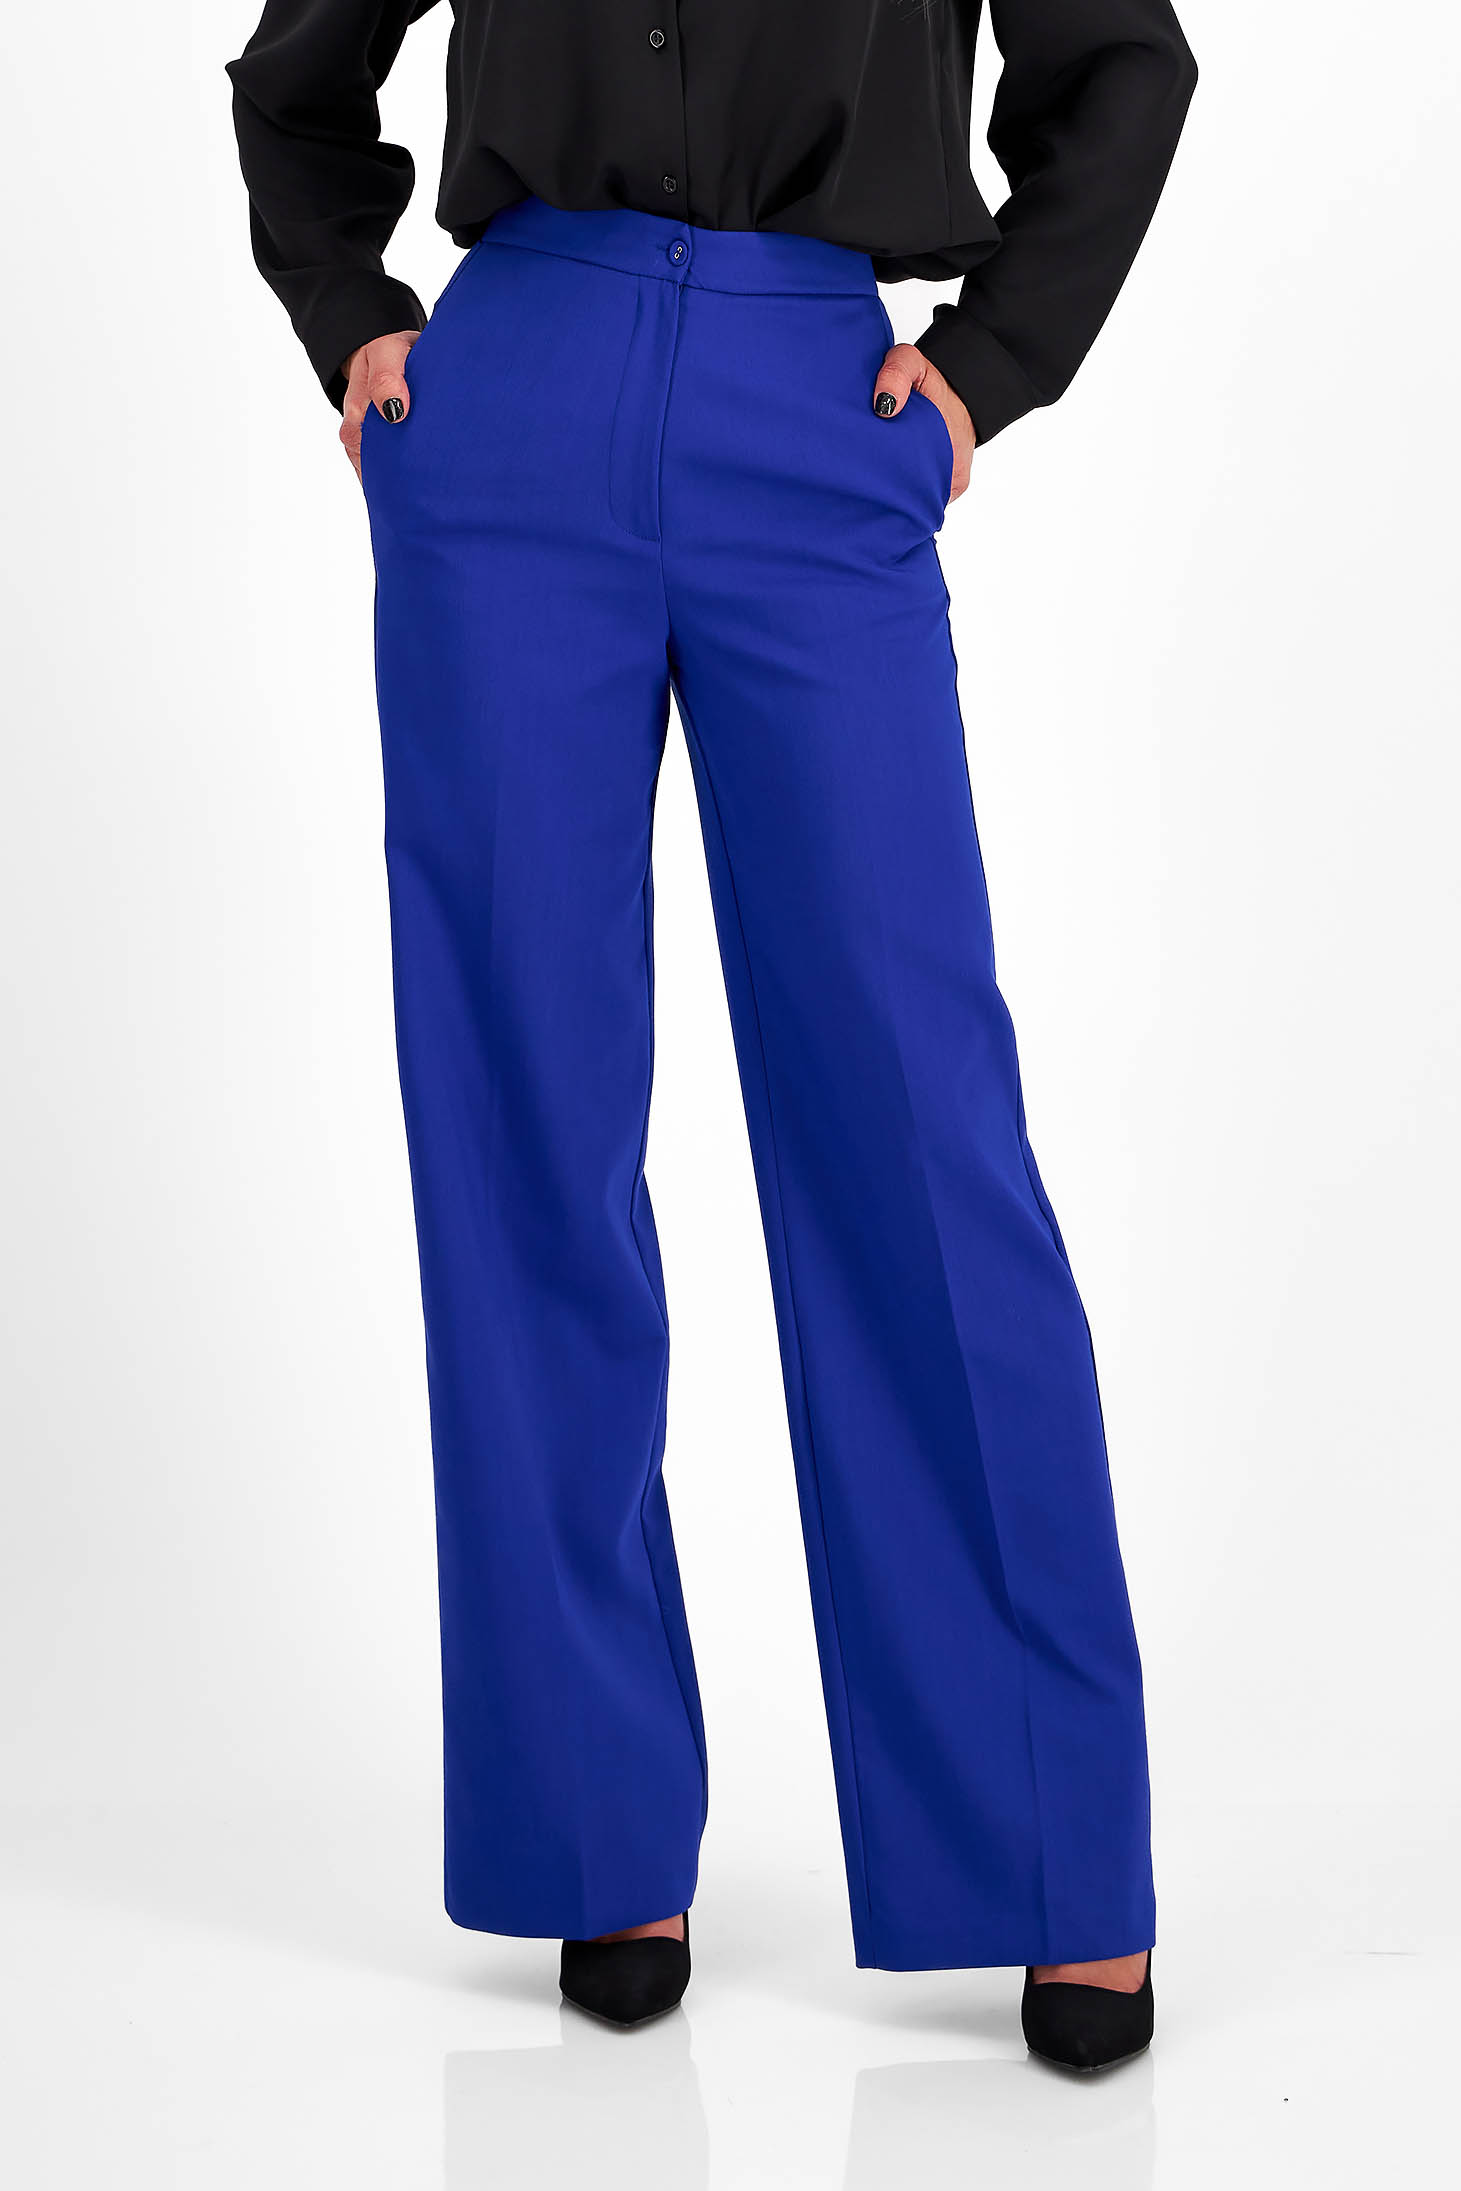 Kék pamutból készült nadrág hosszú bővülő magas derekú 1 - StarShinerS.hu